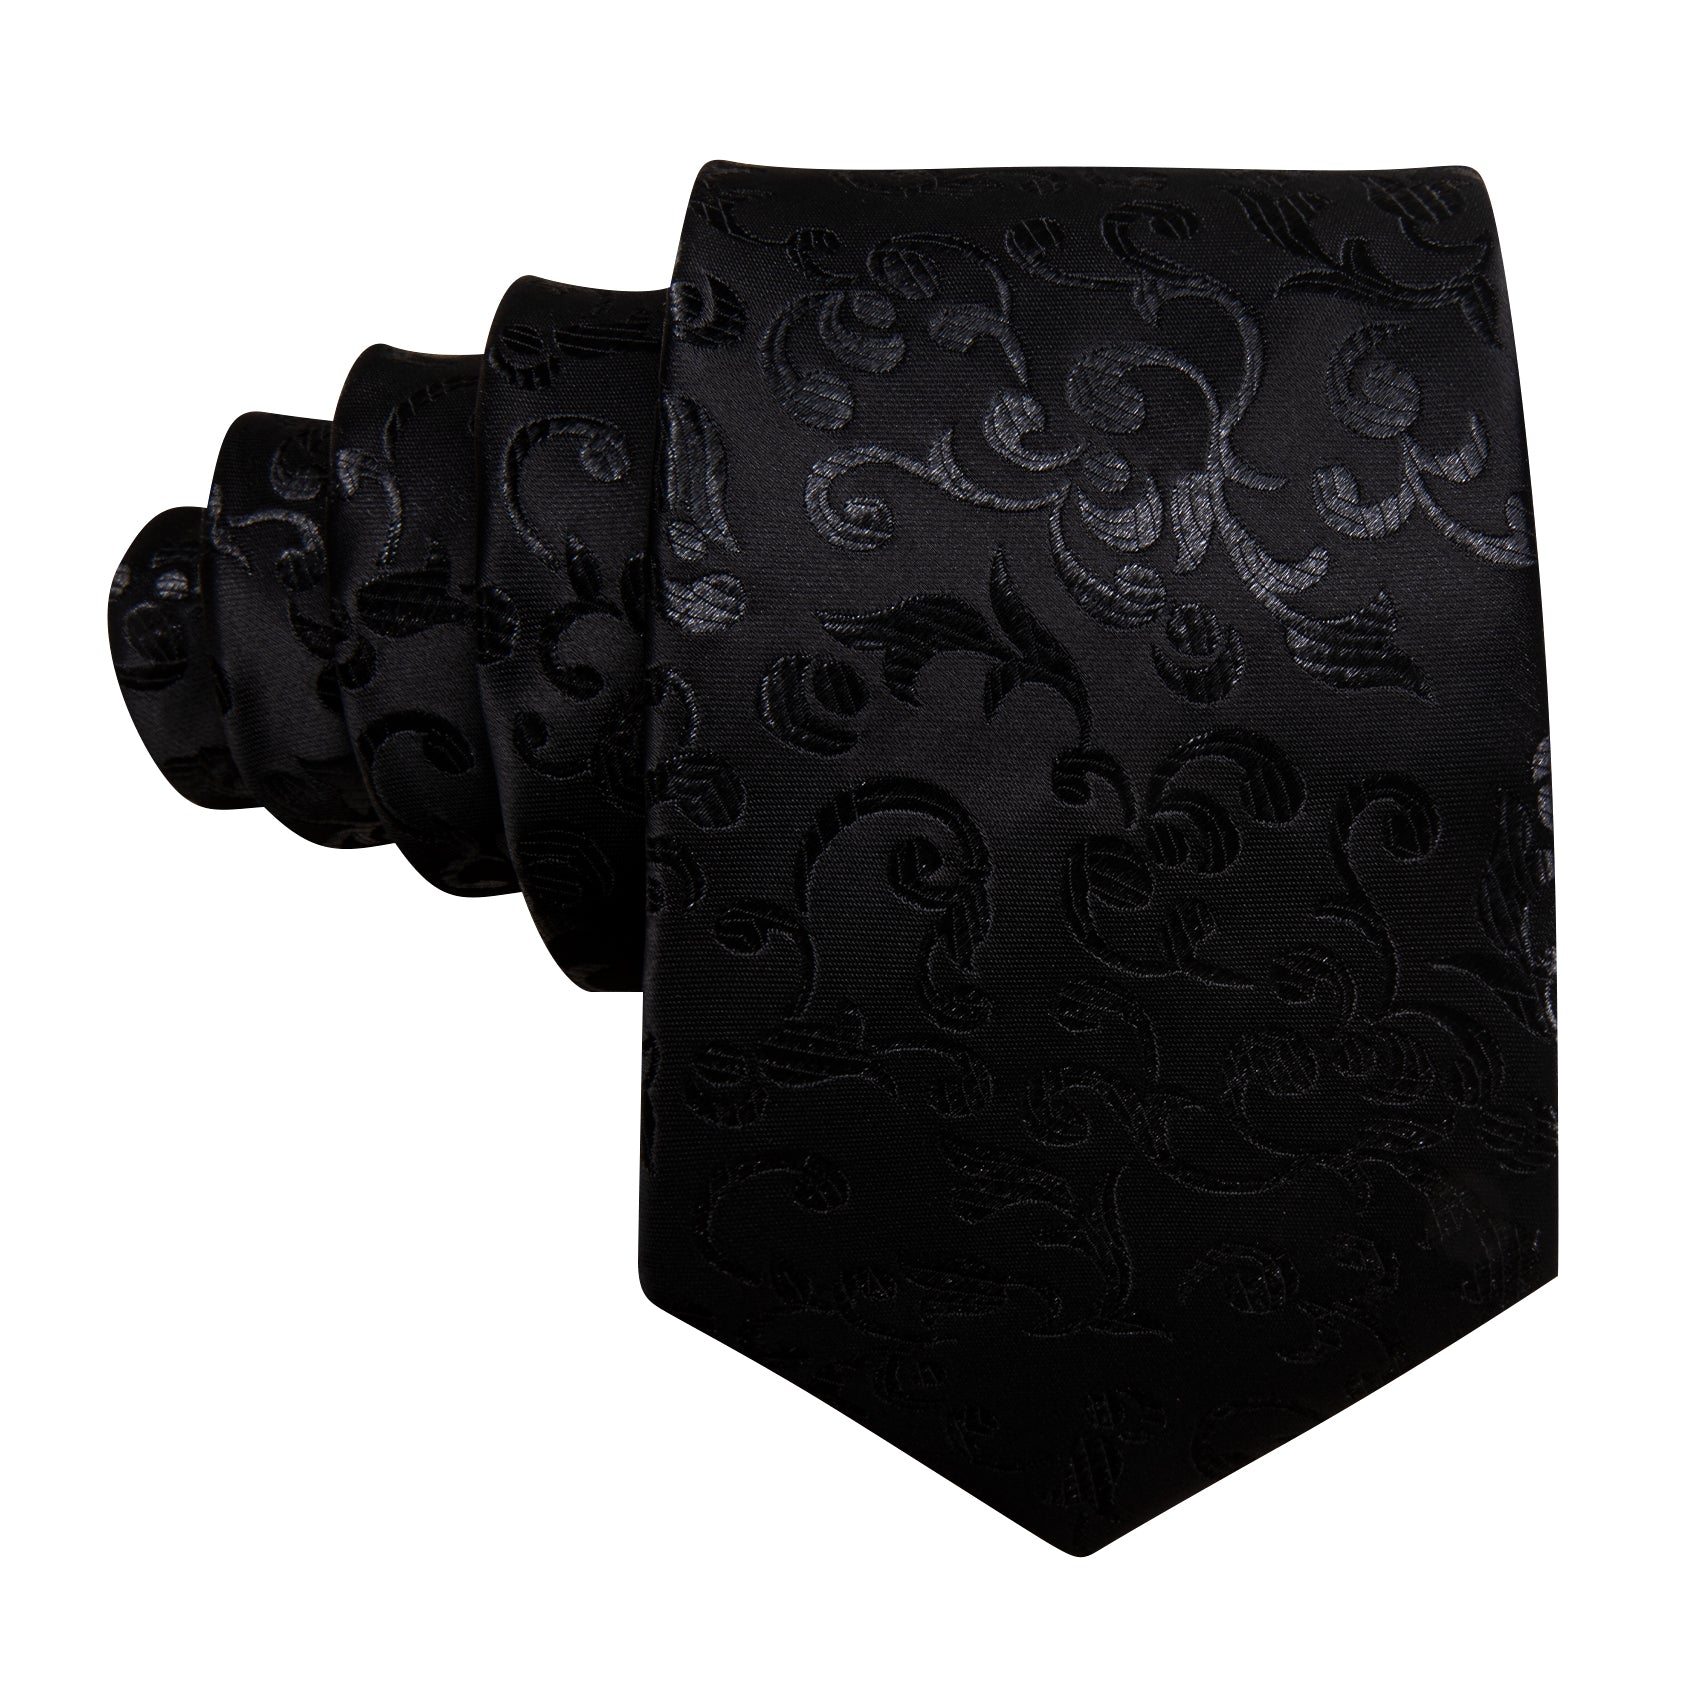 Luxury Black Floral Silk Tie Handkerchief Cufflinks Set